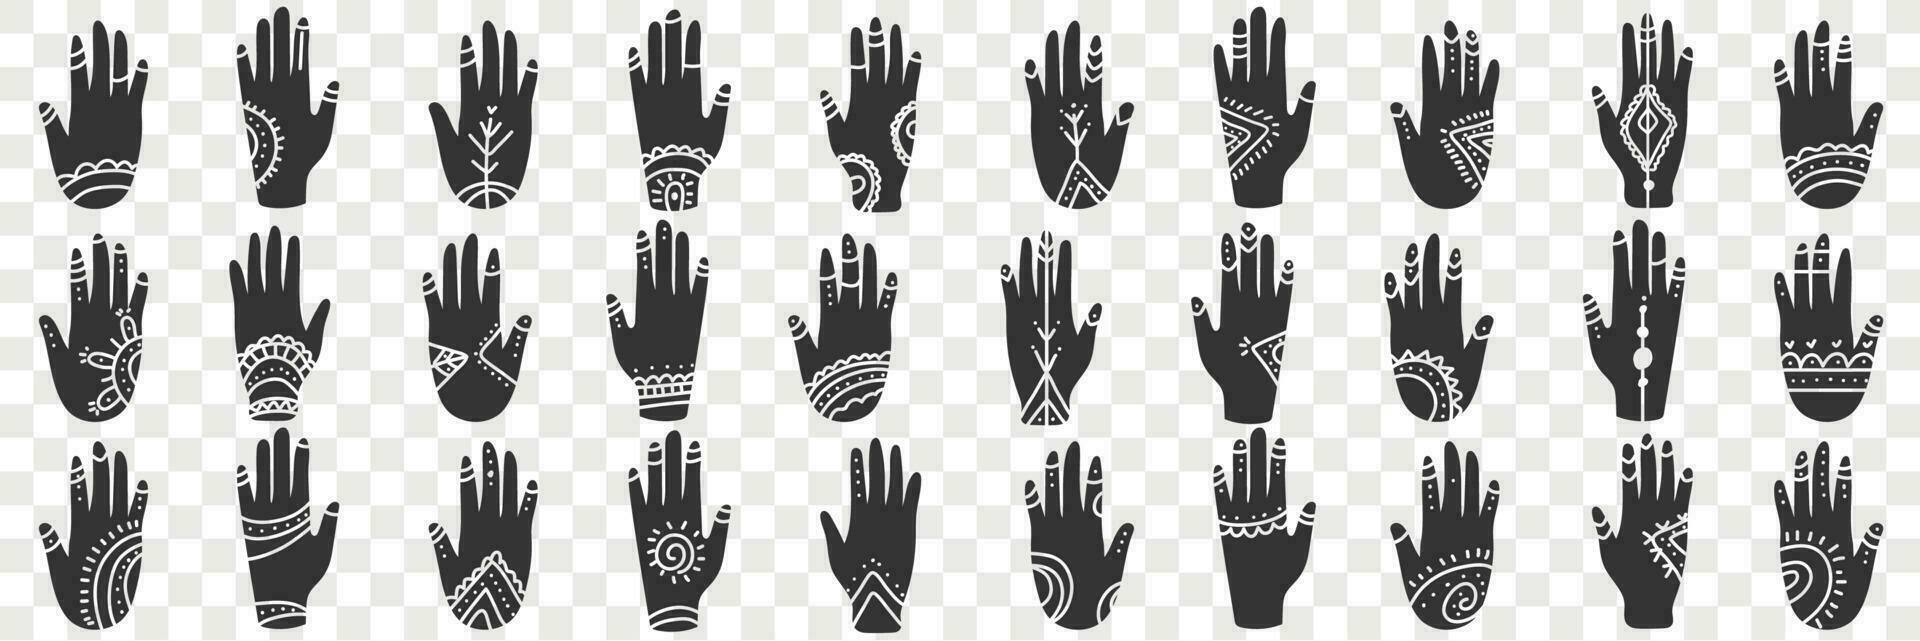 humano manos con oculto señales garabatear colocar. colección de mano dibujado varios negro humano manos con espiritual señales y símbolos en filas aislado en transparente vector